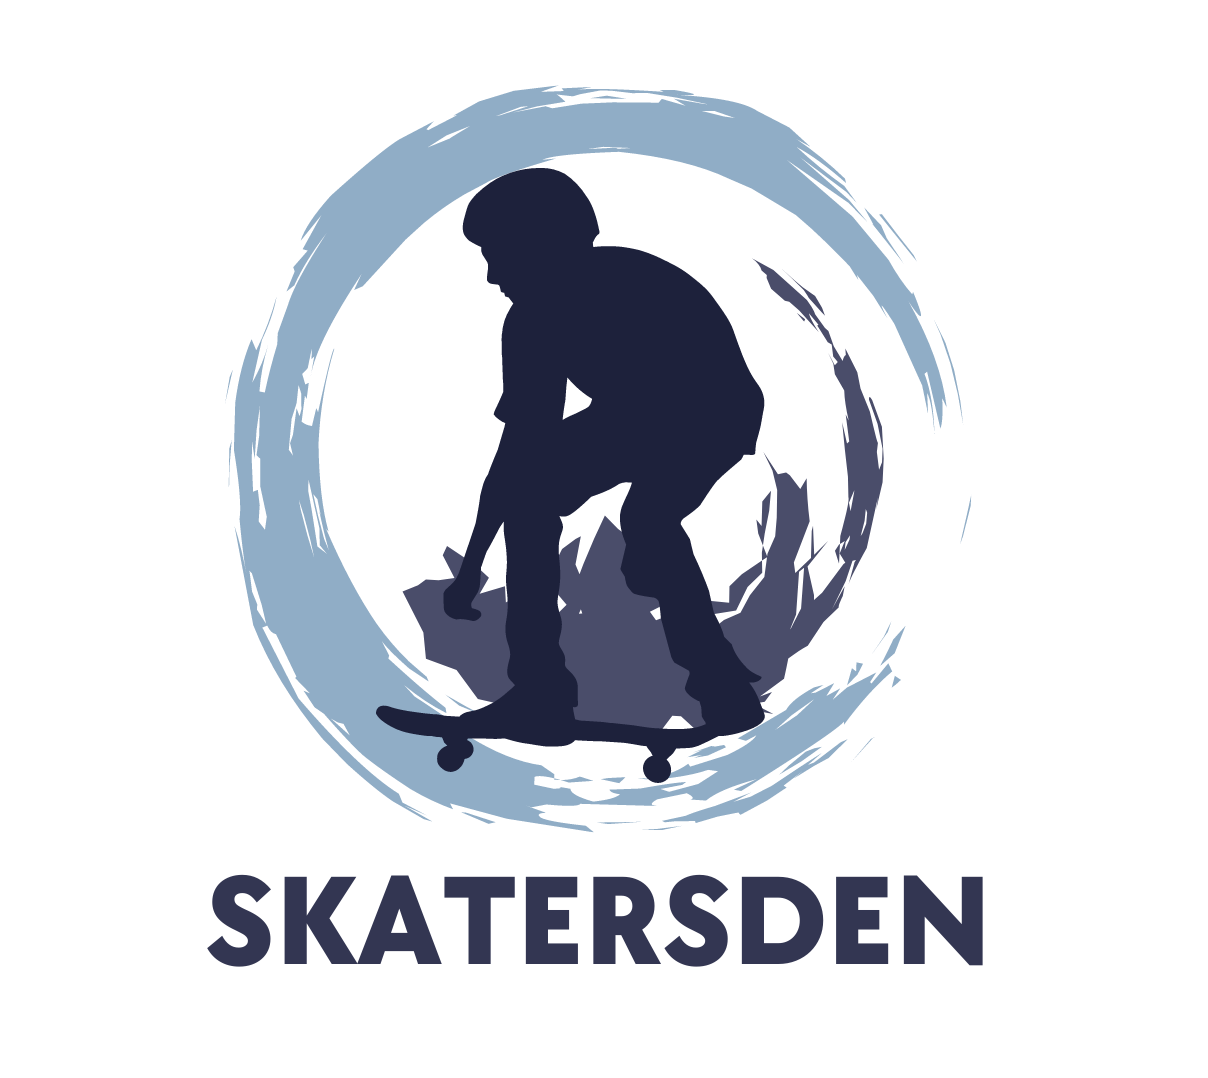 SkatersDen